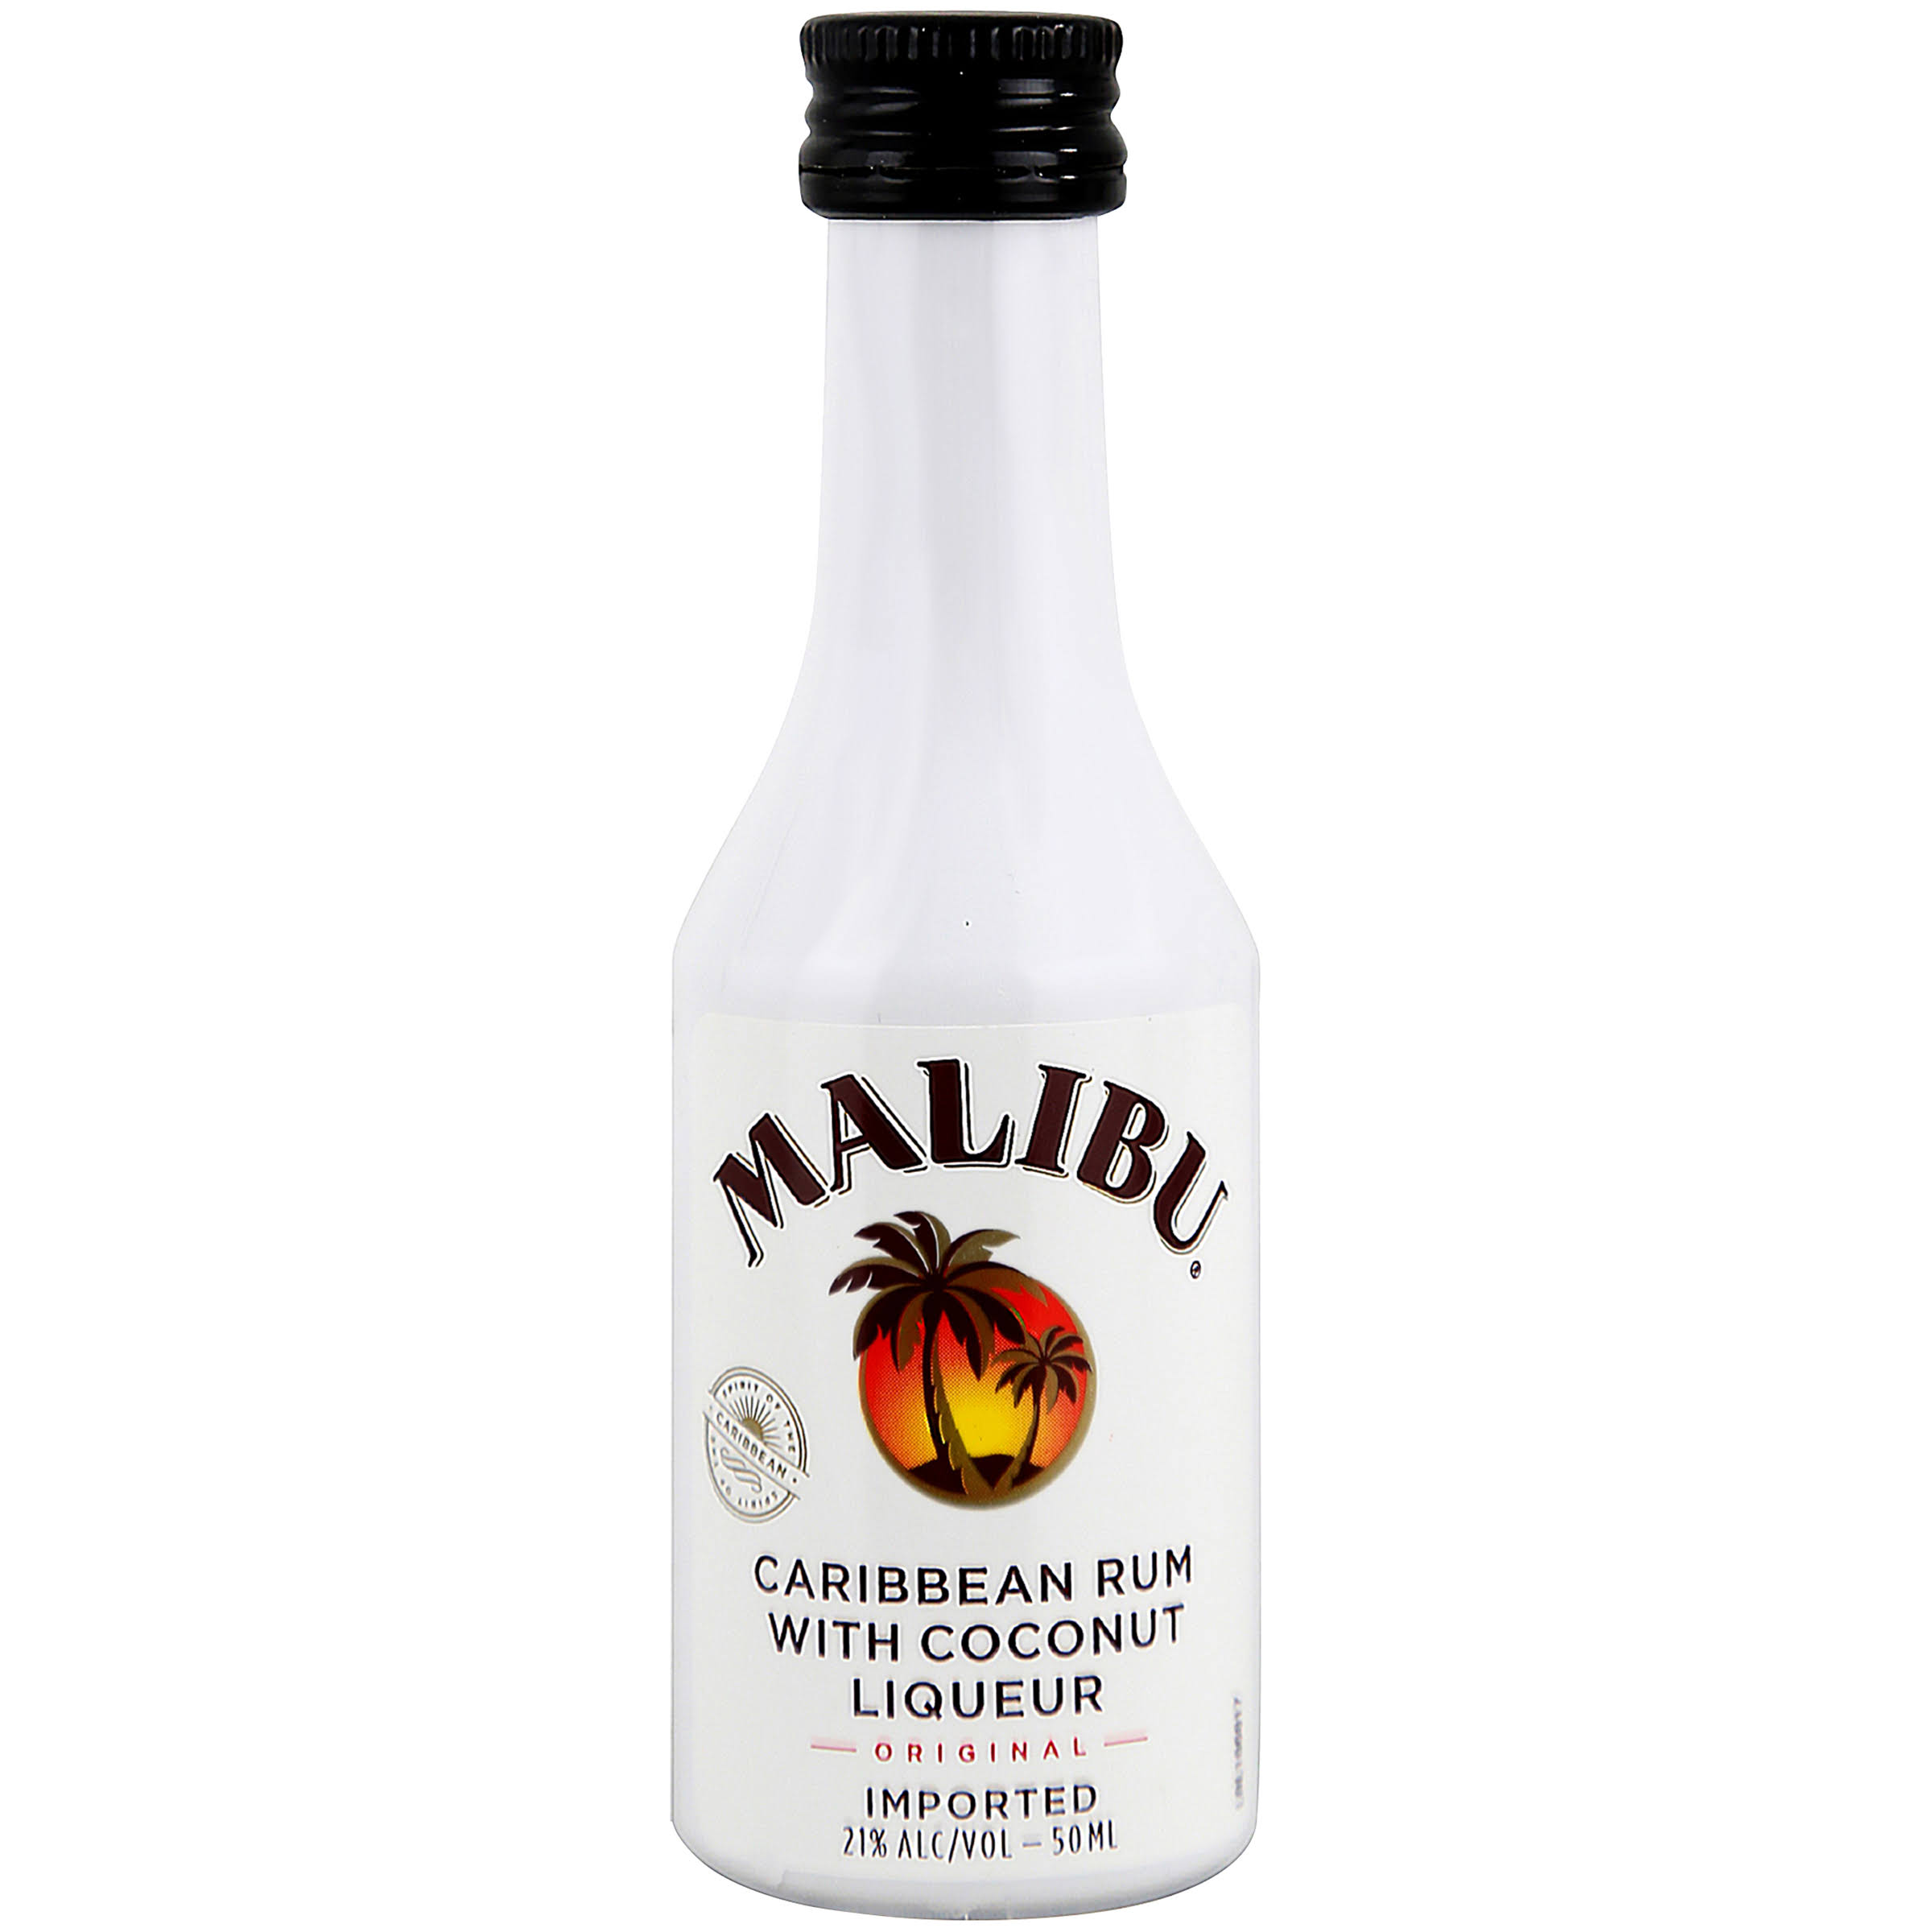 Malibu Rum, Caribbean, with Coconut Liqueur, Original - 50 ml